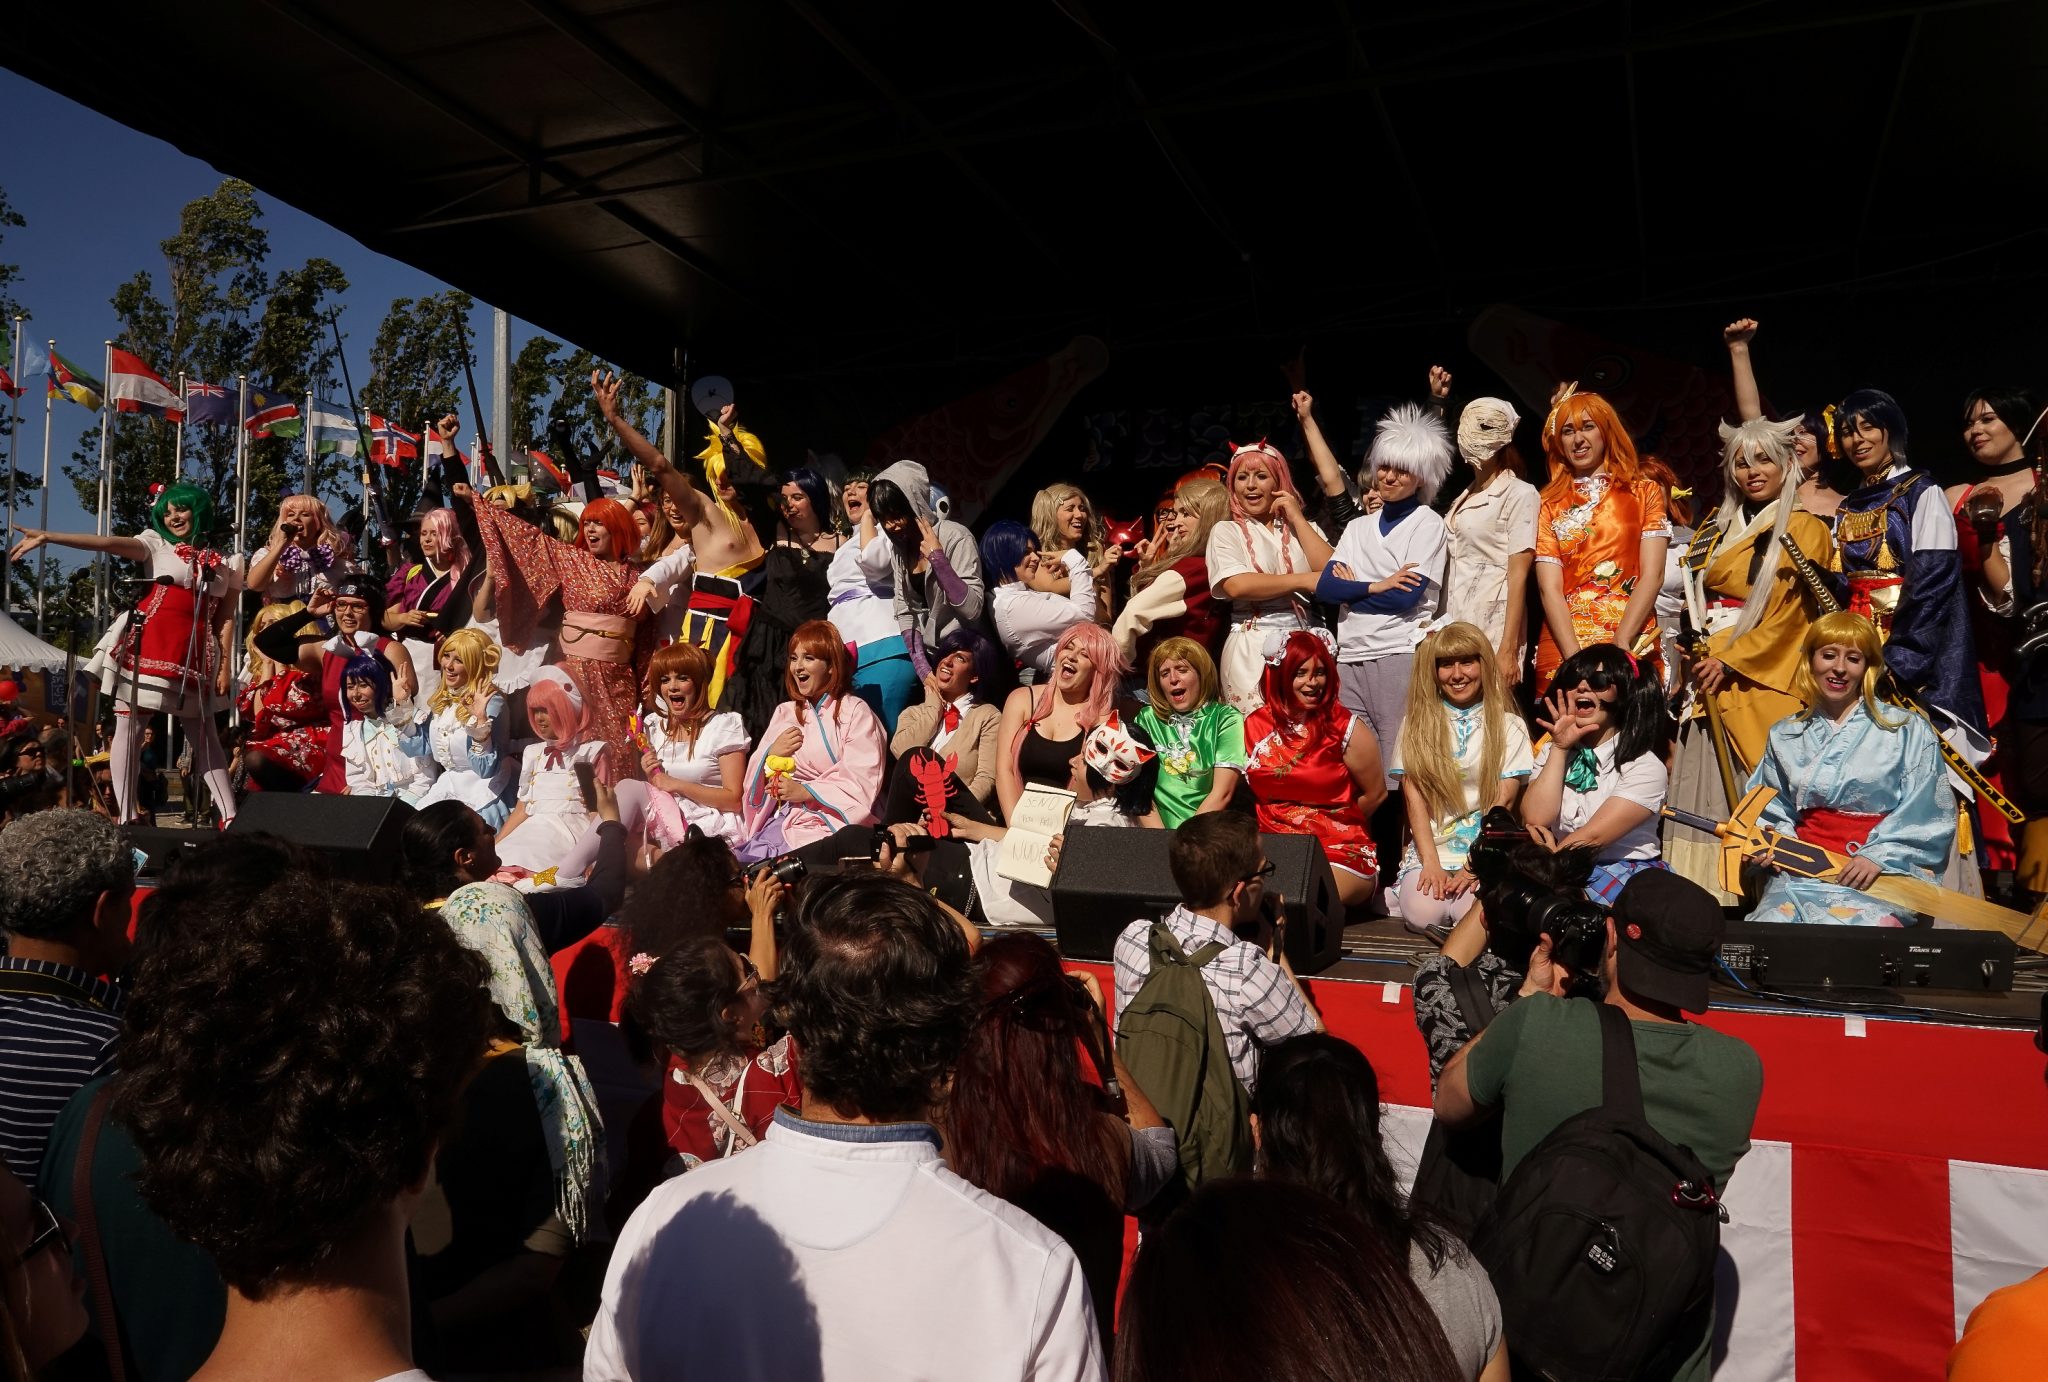 Em cima de um palco, vários praticantes de cosplay posam para os fotógrafos a sorrir.